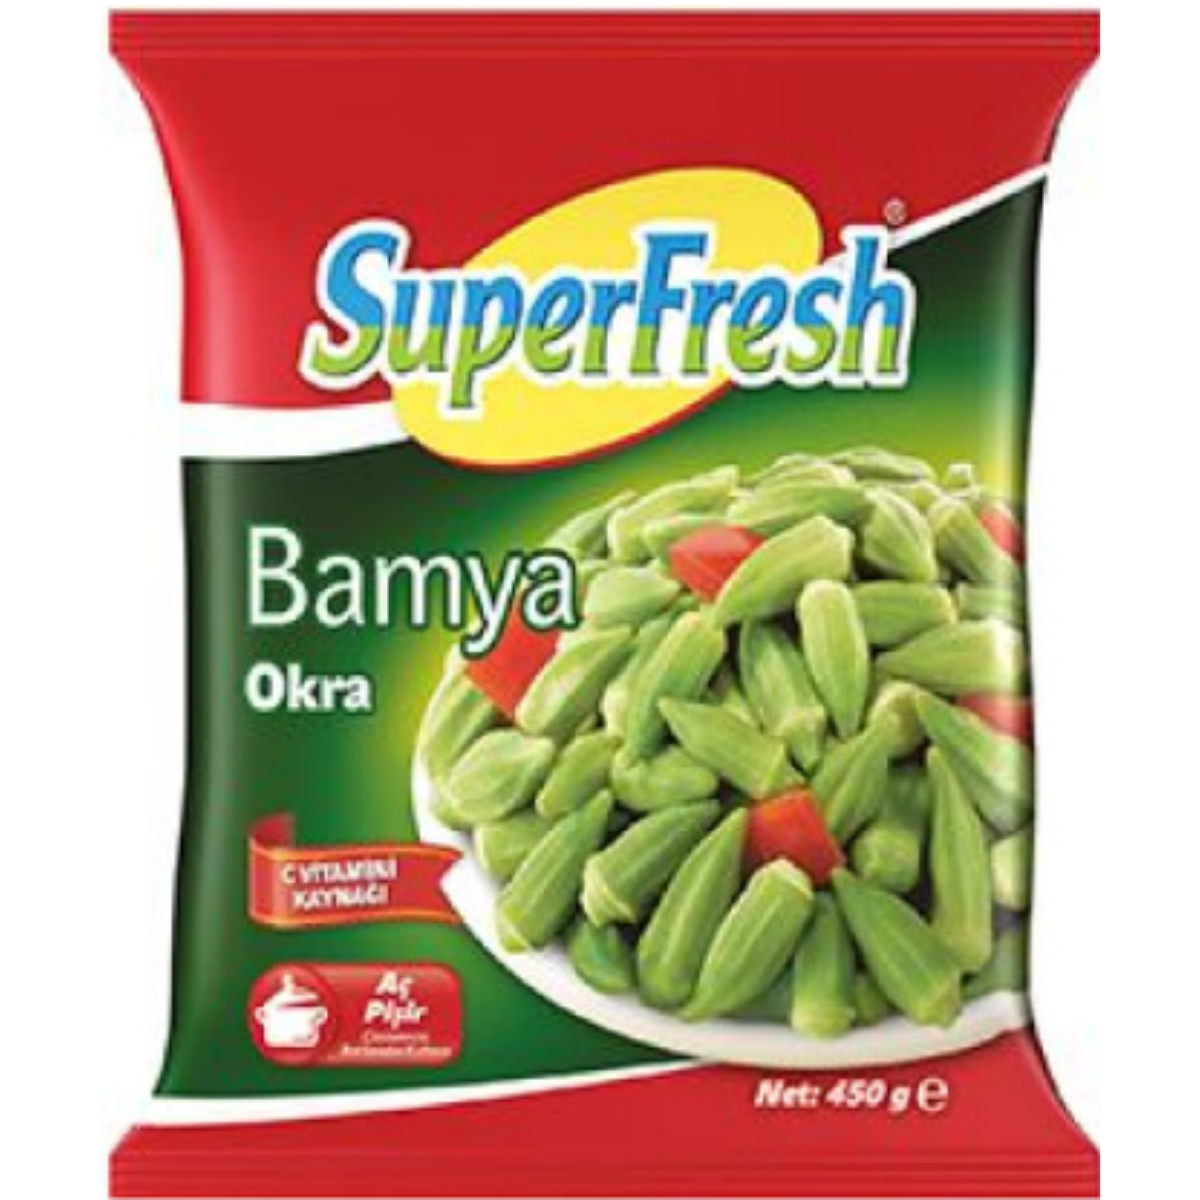 SUPERFRESH BAMYA OKRA 450 G